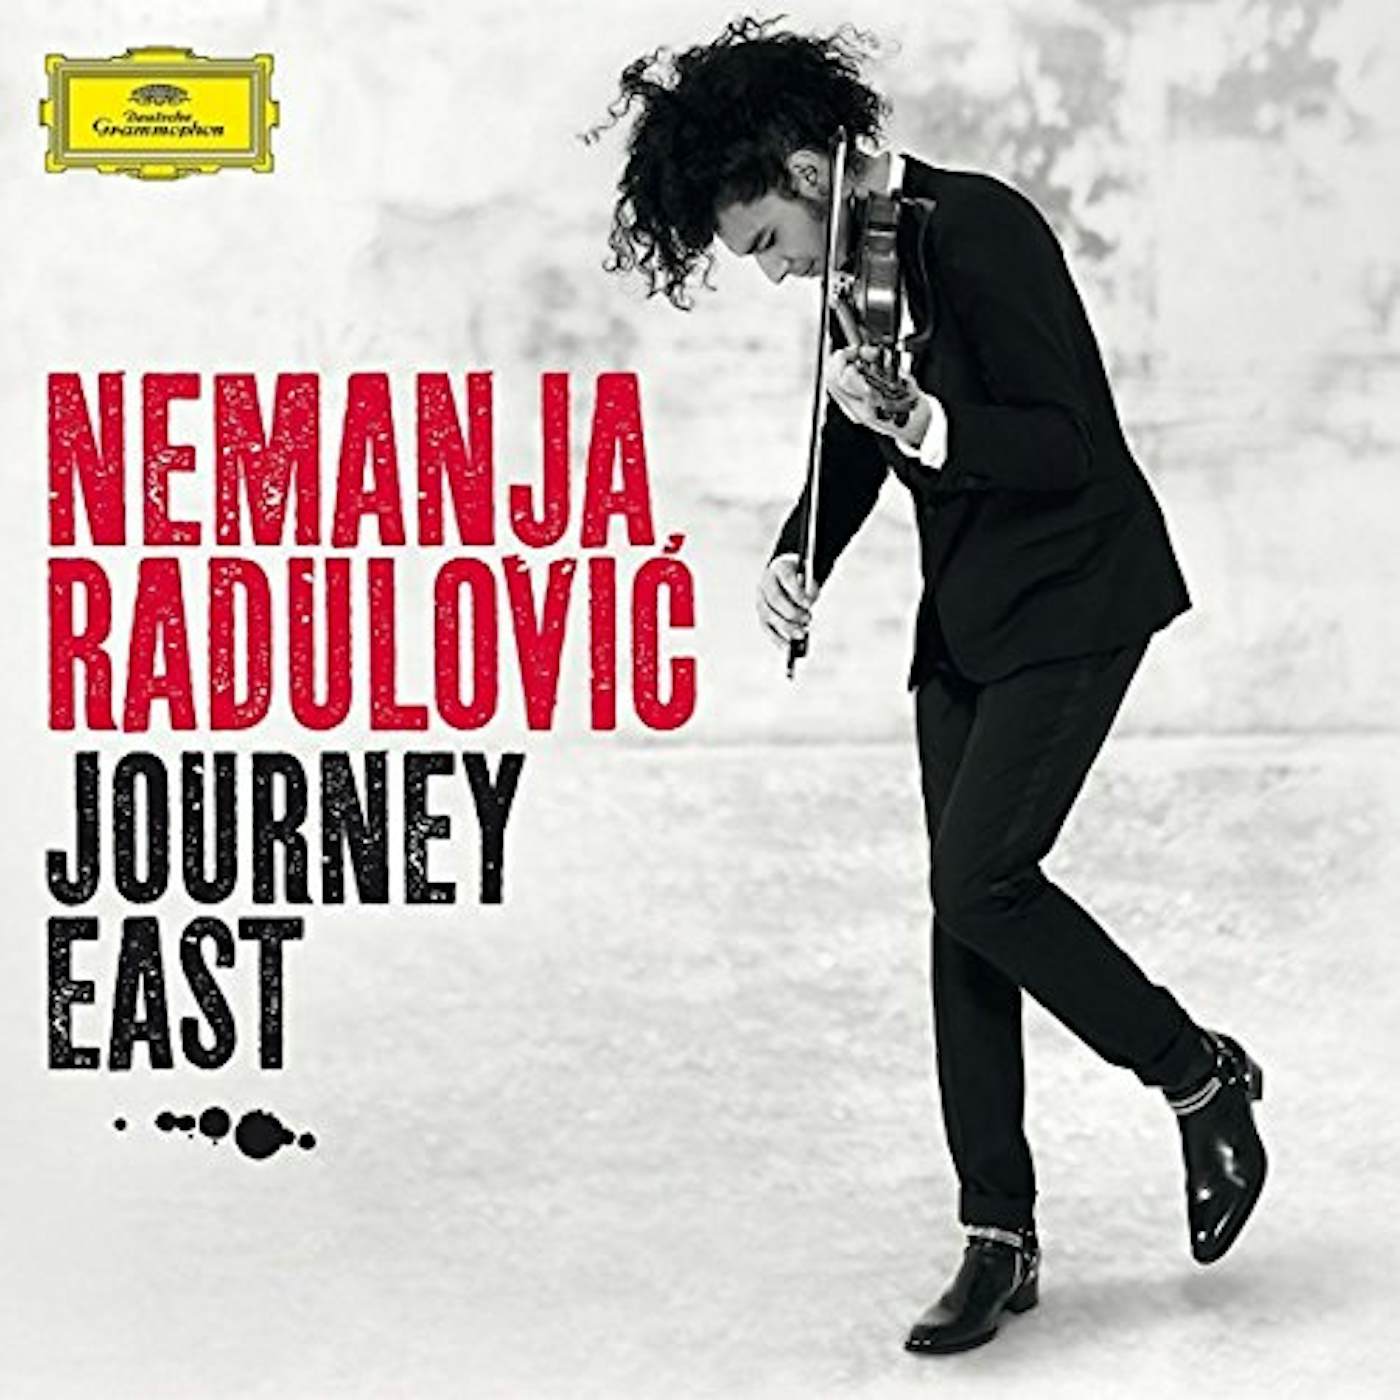 Nemanja Radulović JOURNEY EAST CD